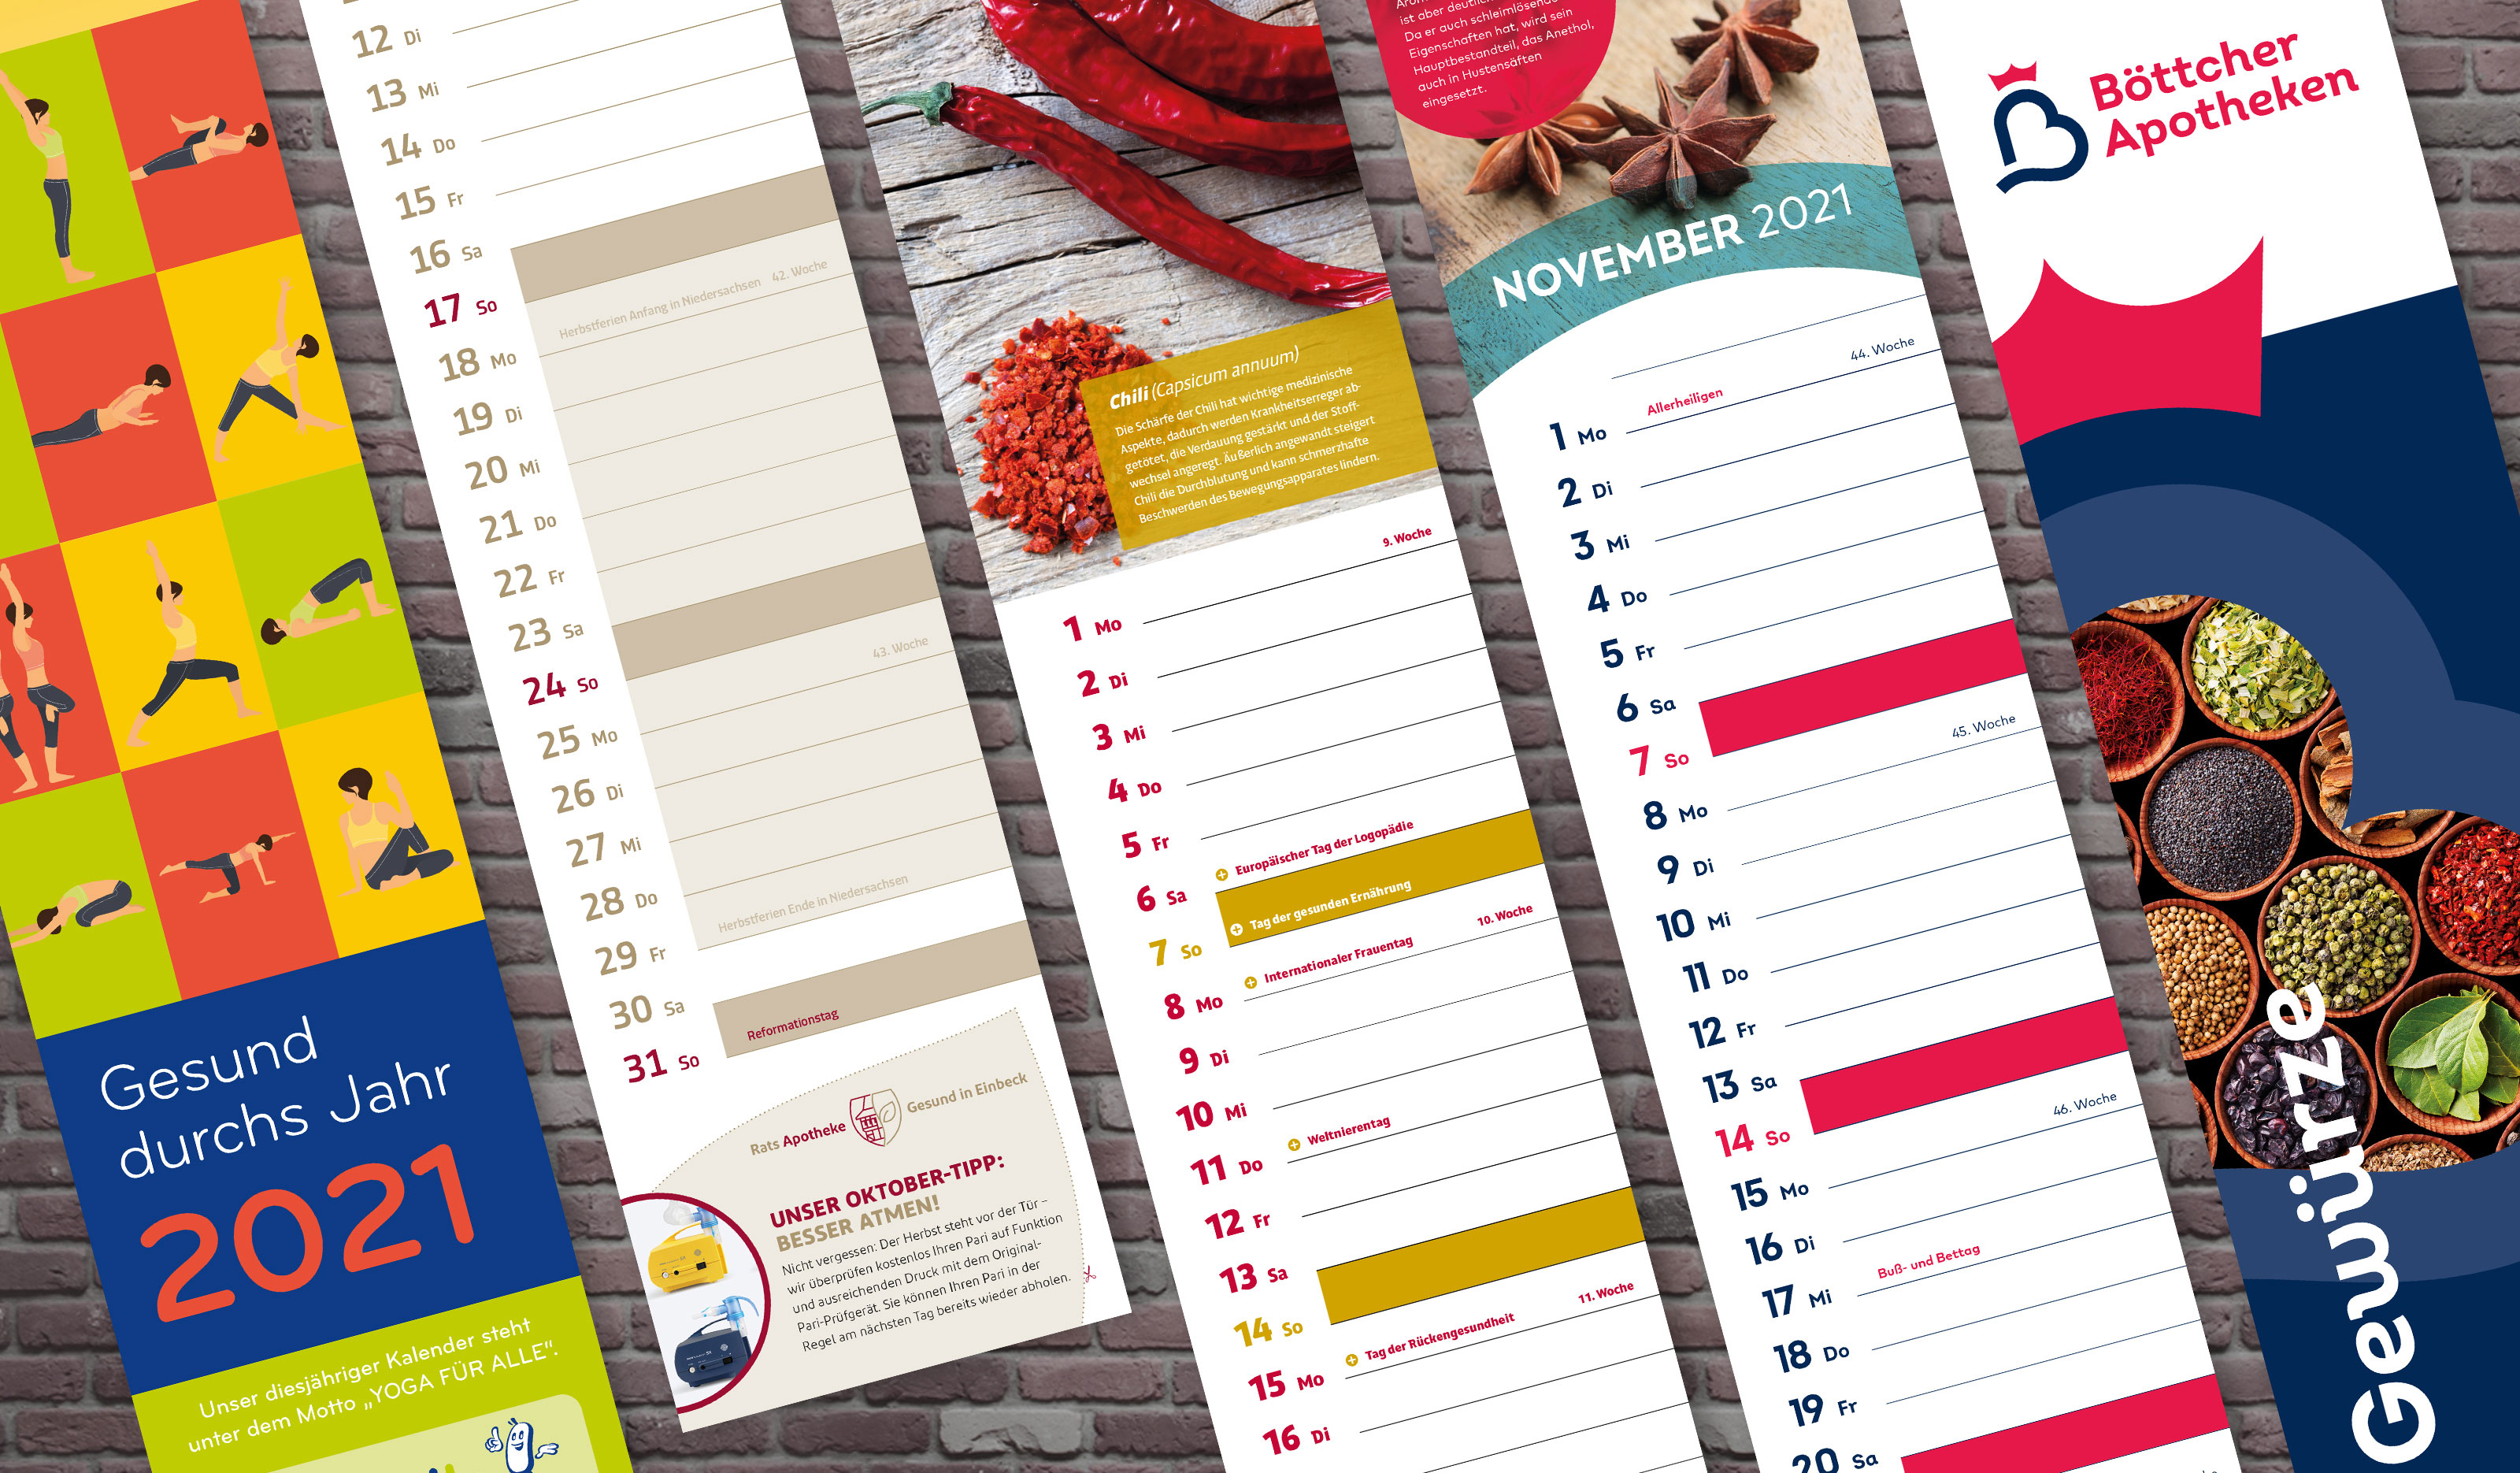 Individuell gestaltete Apothekenkalender mit Bildern, Rätseln, Rabatt-Coupons